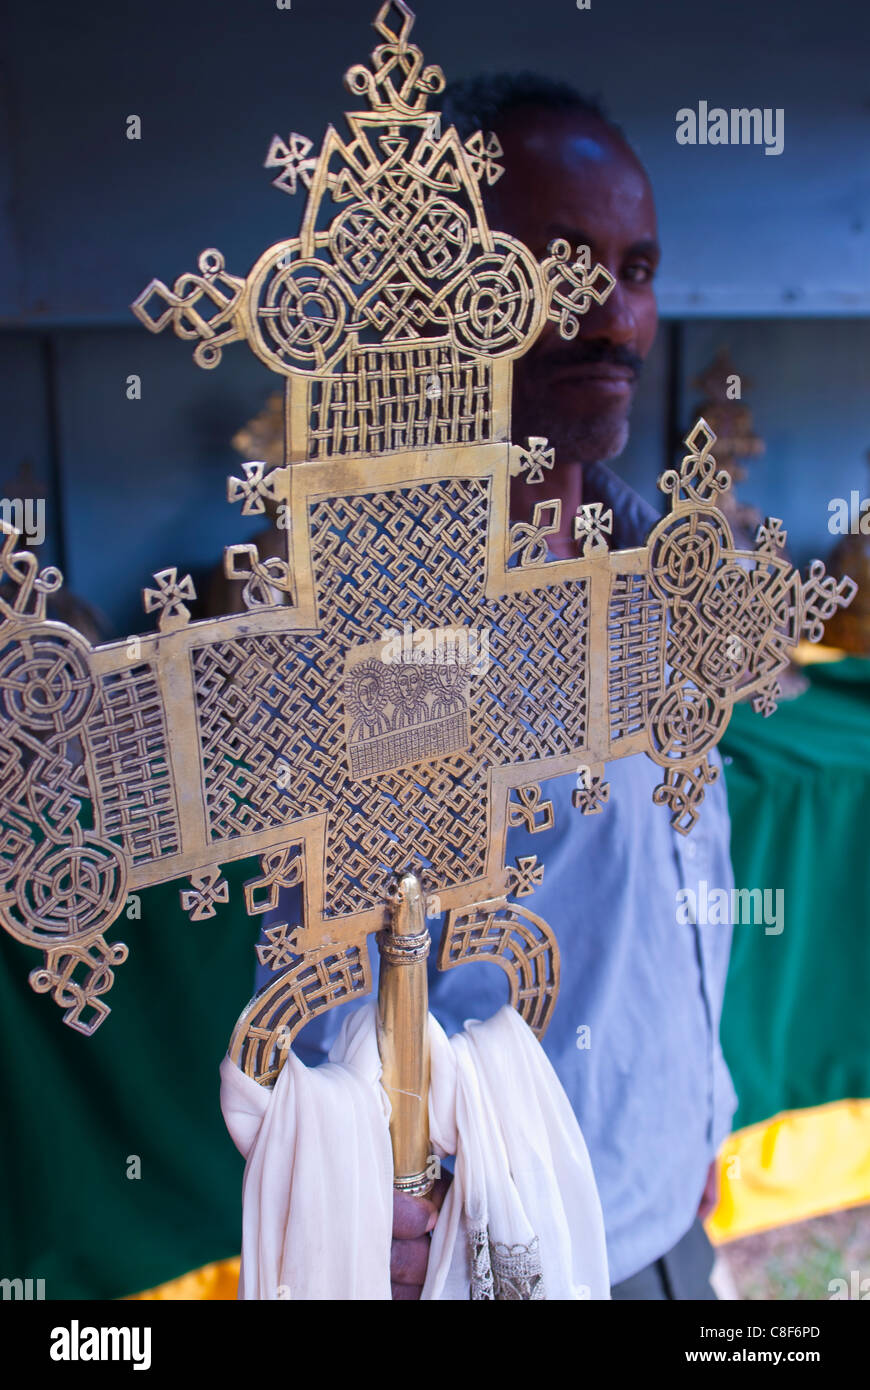 Moine orthodoxe debout derrière une croix chrétienne, Axum, Ethiopie Banque D'Images